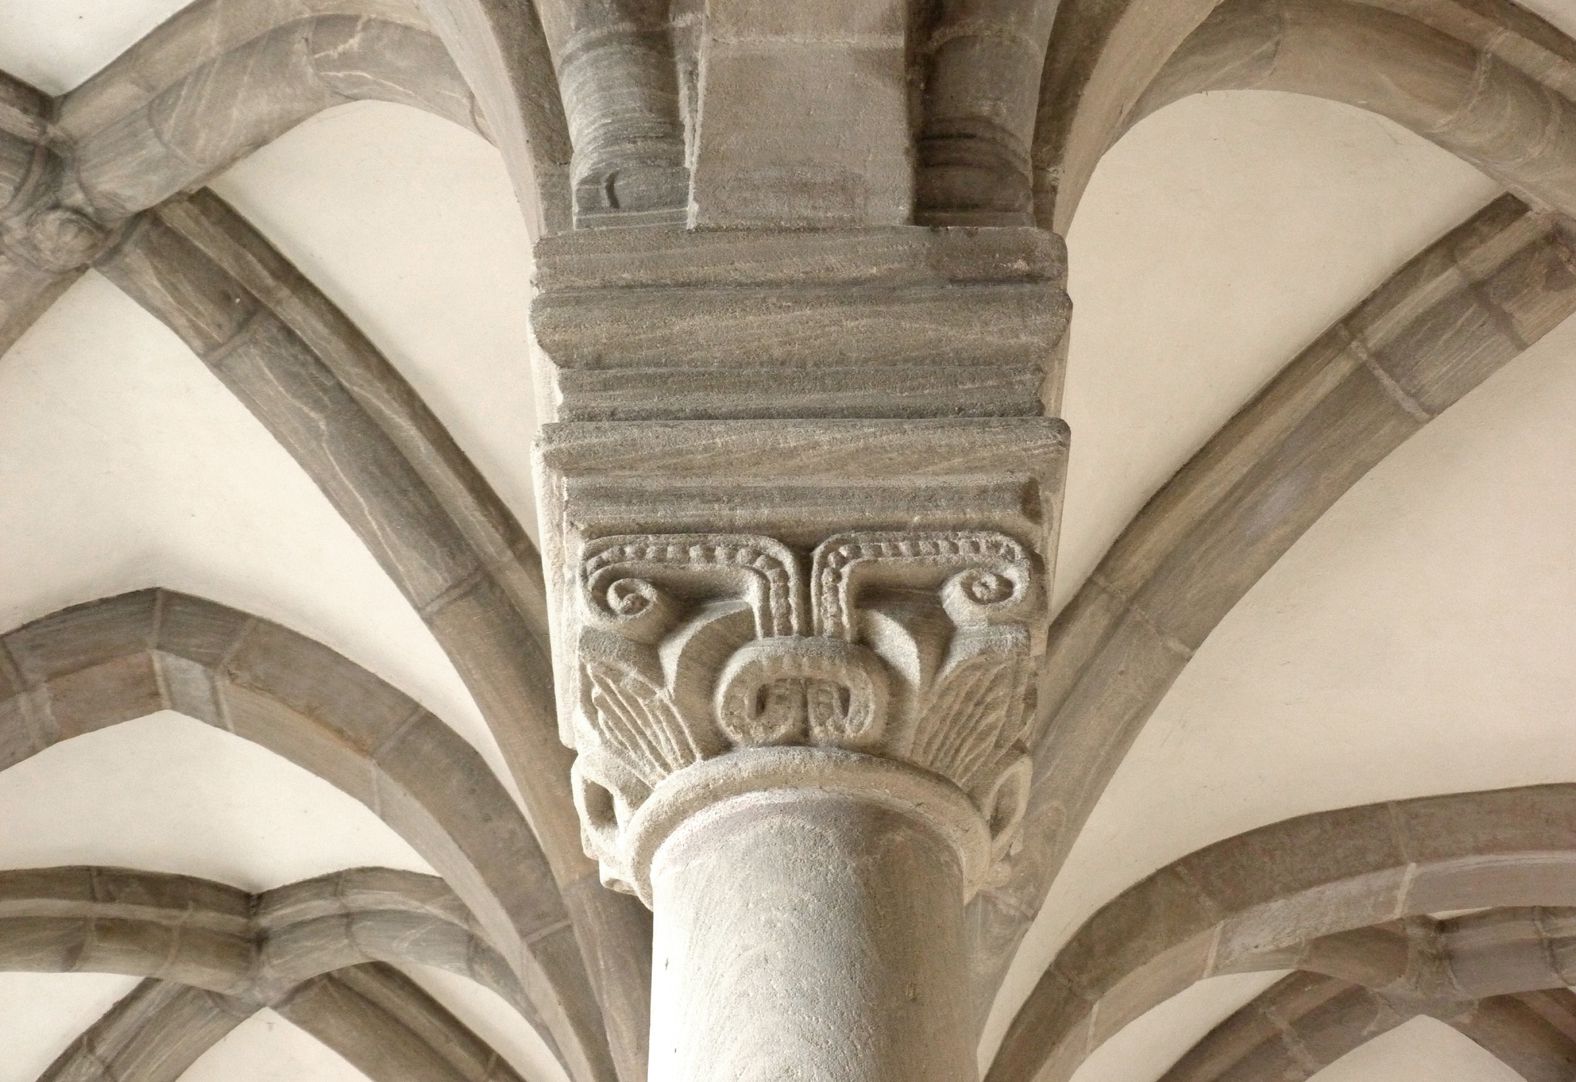 Euchariuskapelle östliches Säulenkapitell mit Gewölben